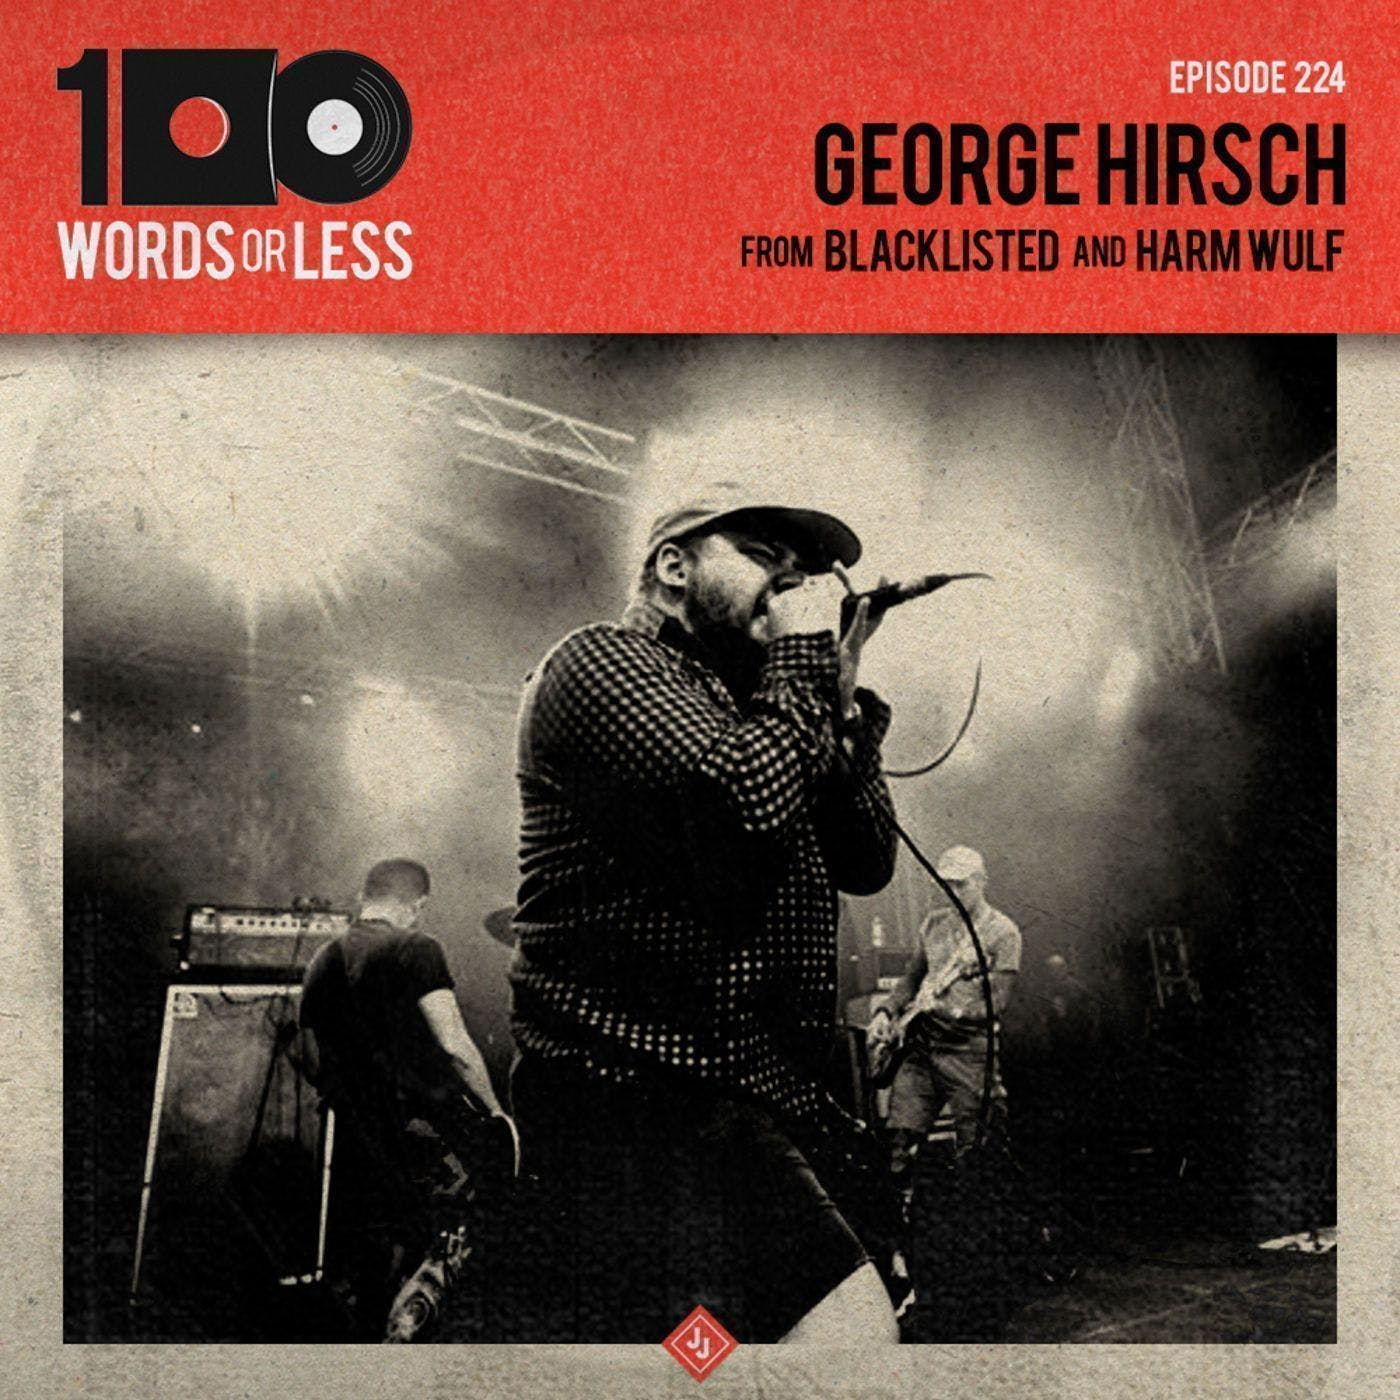 George Hirsch from Blacklisted/Harm Wülf